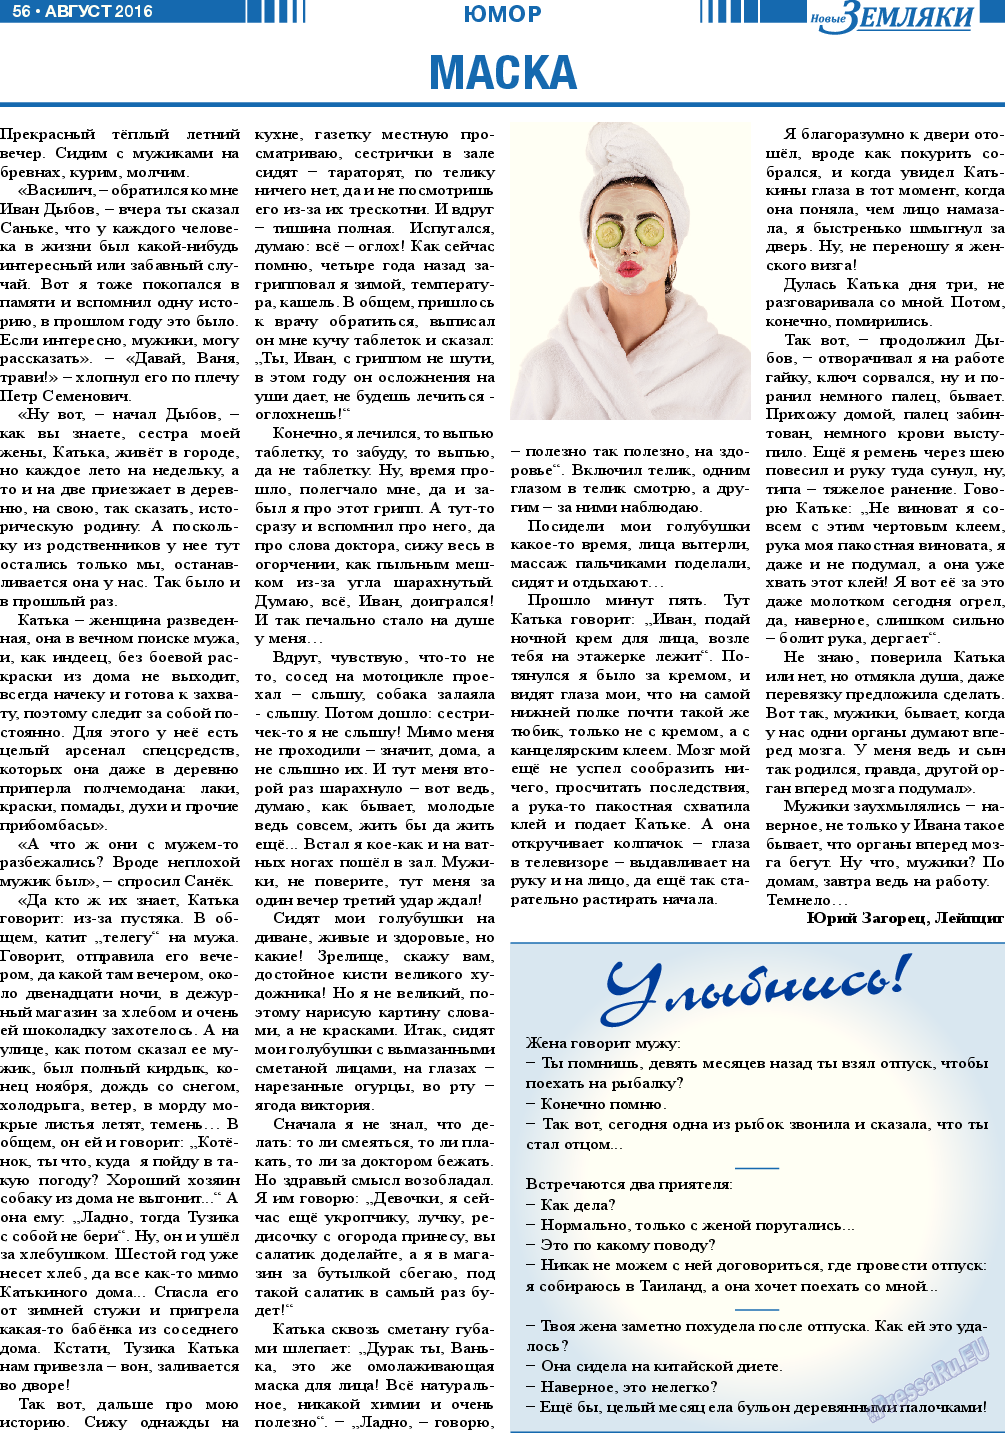 Новые Земляки, газета. 2016 №8 стр.56